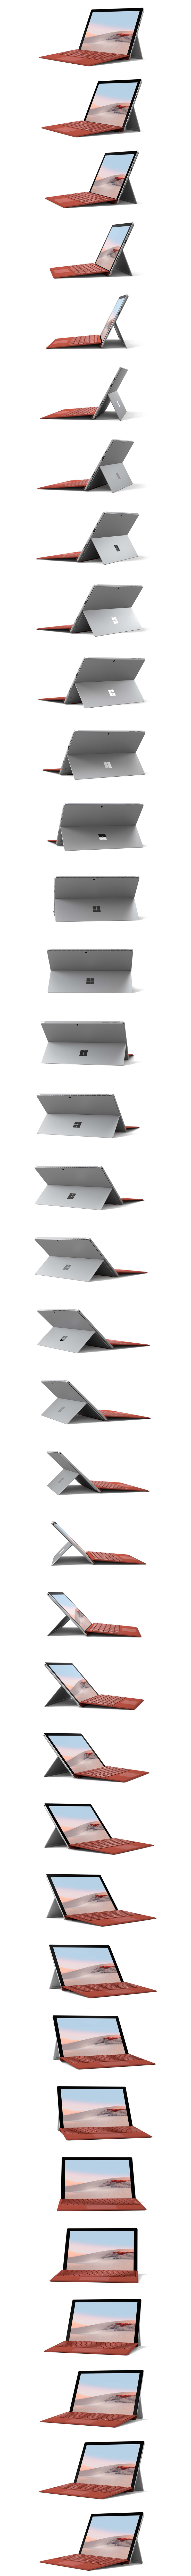 Surface Pro 7 en rotación 360º